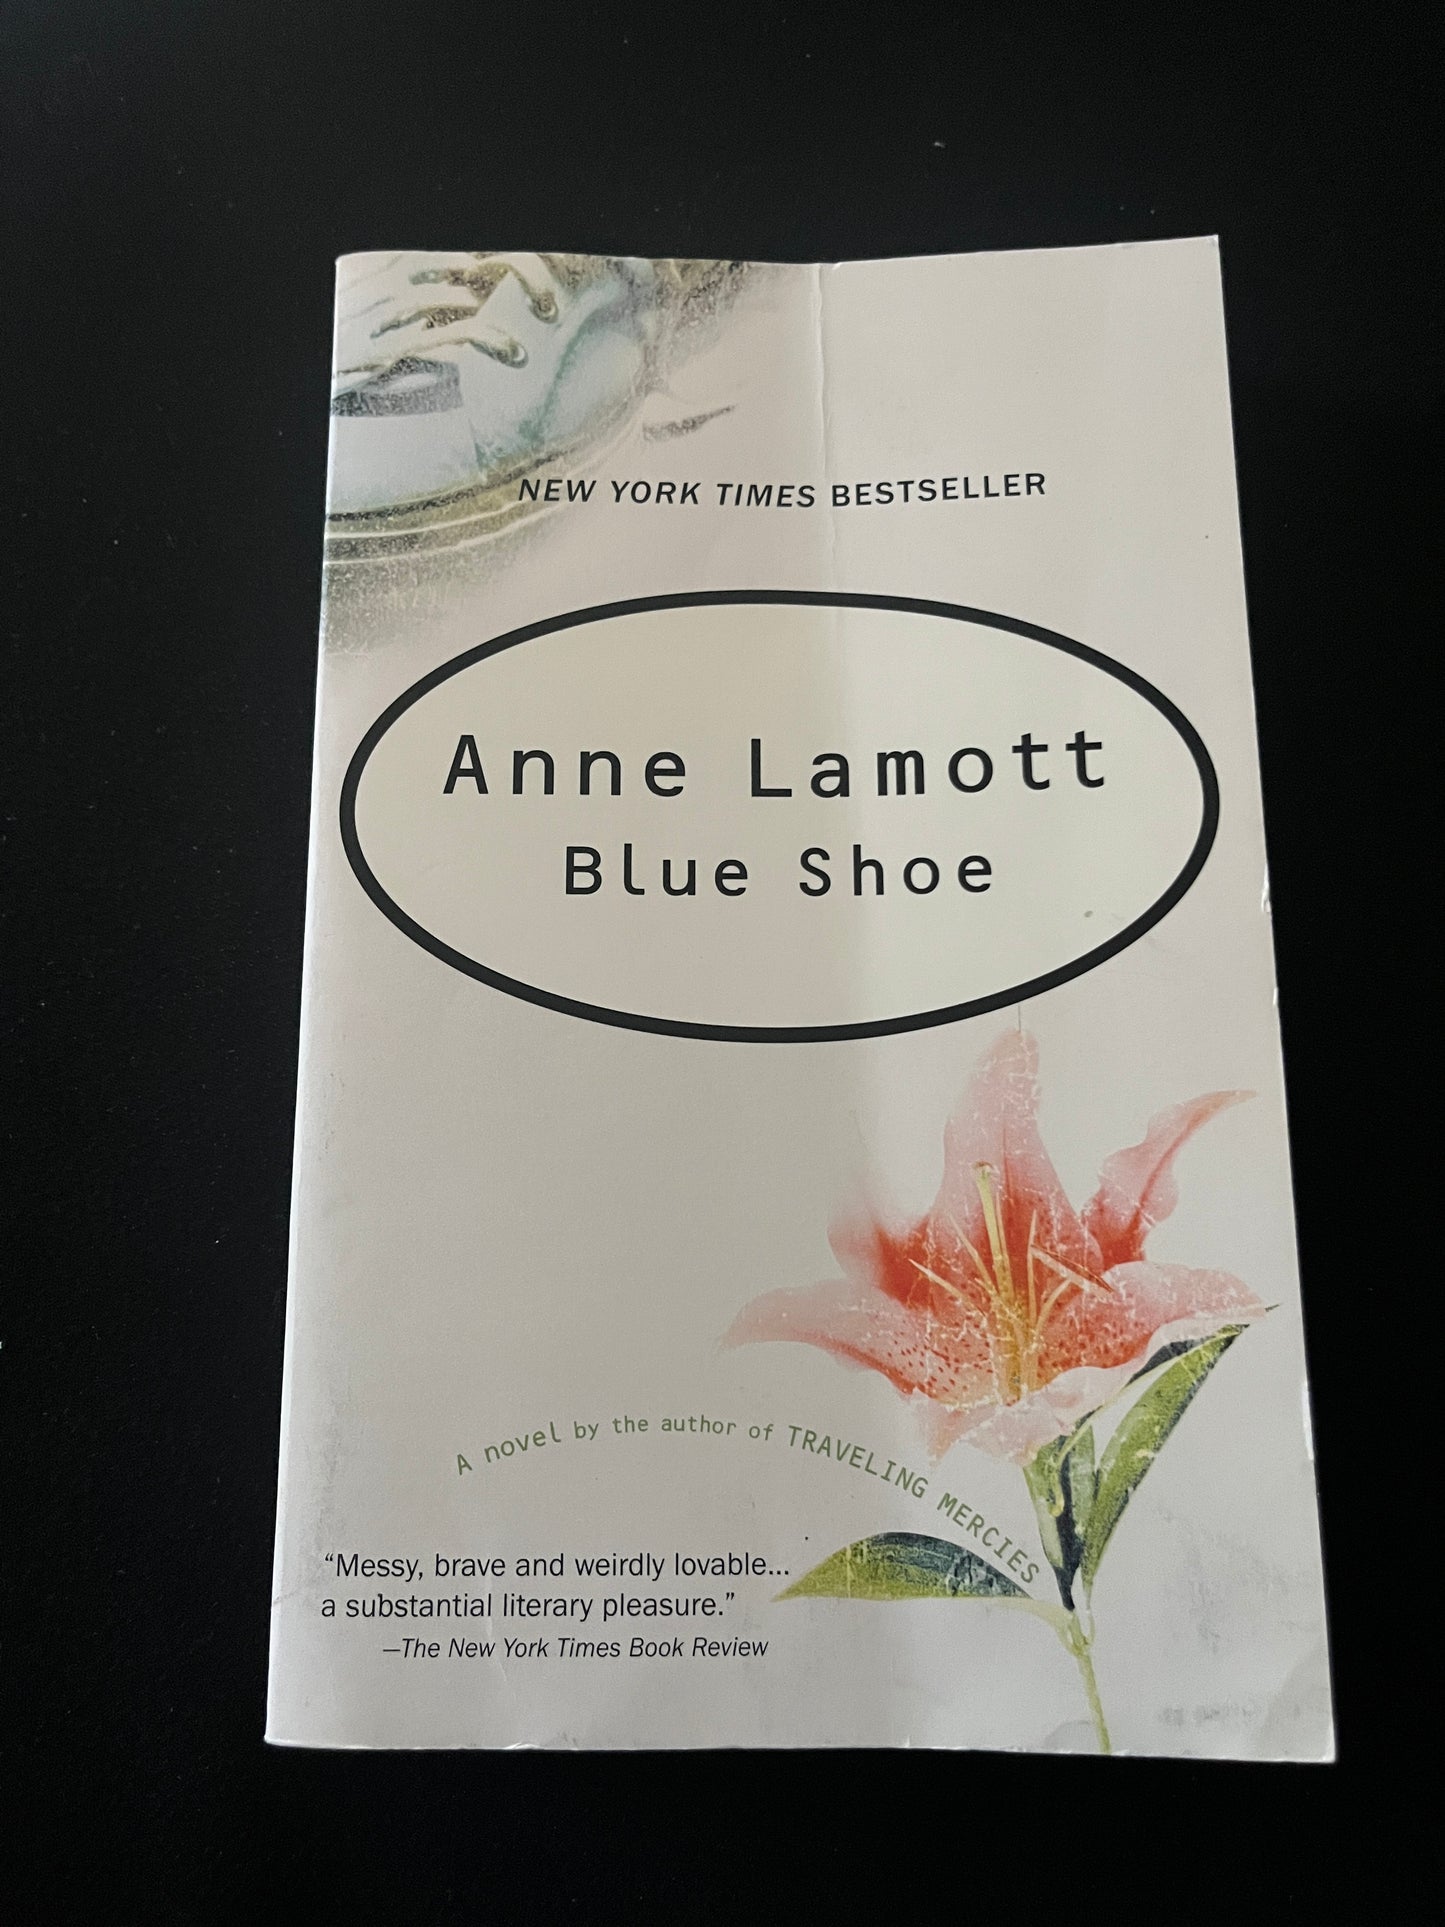 BLUE SHOE by Anne Lamott